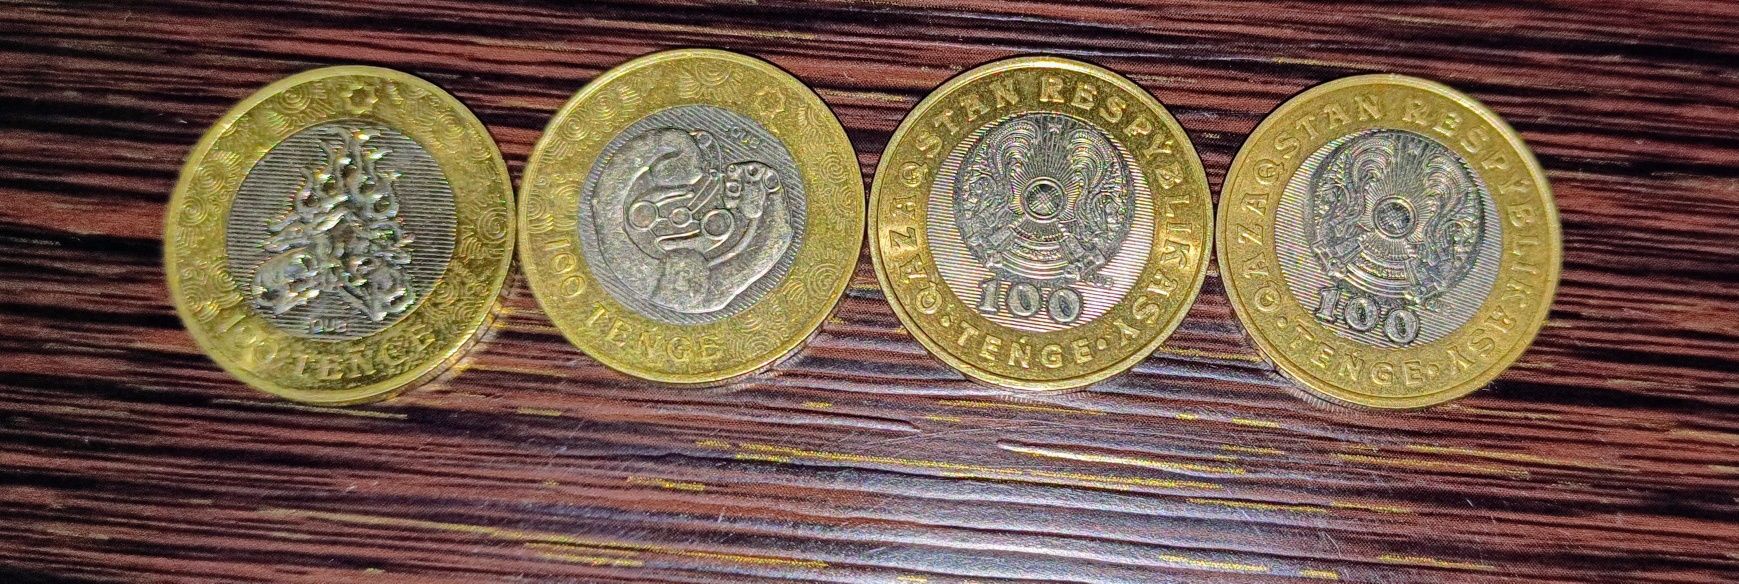 Монеты 100тг коллекционные